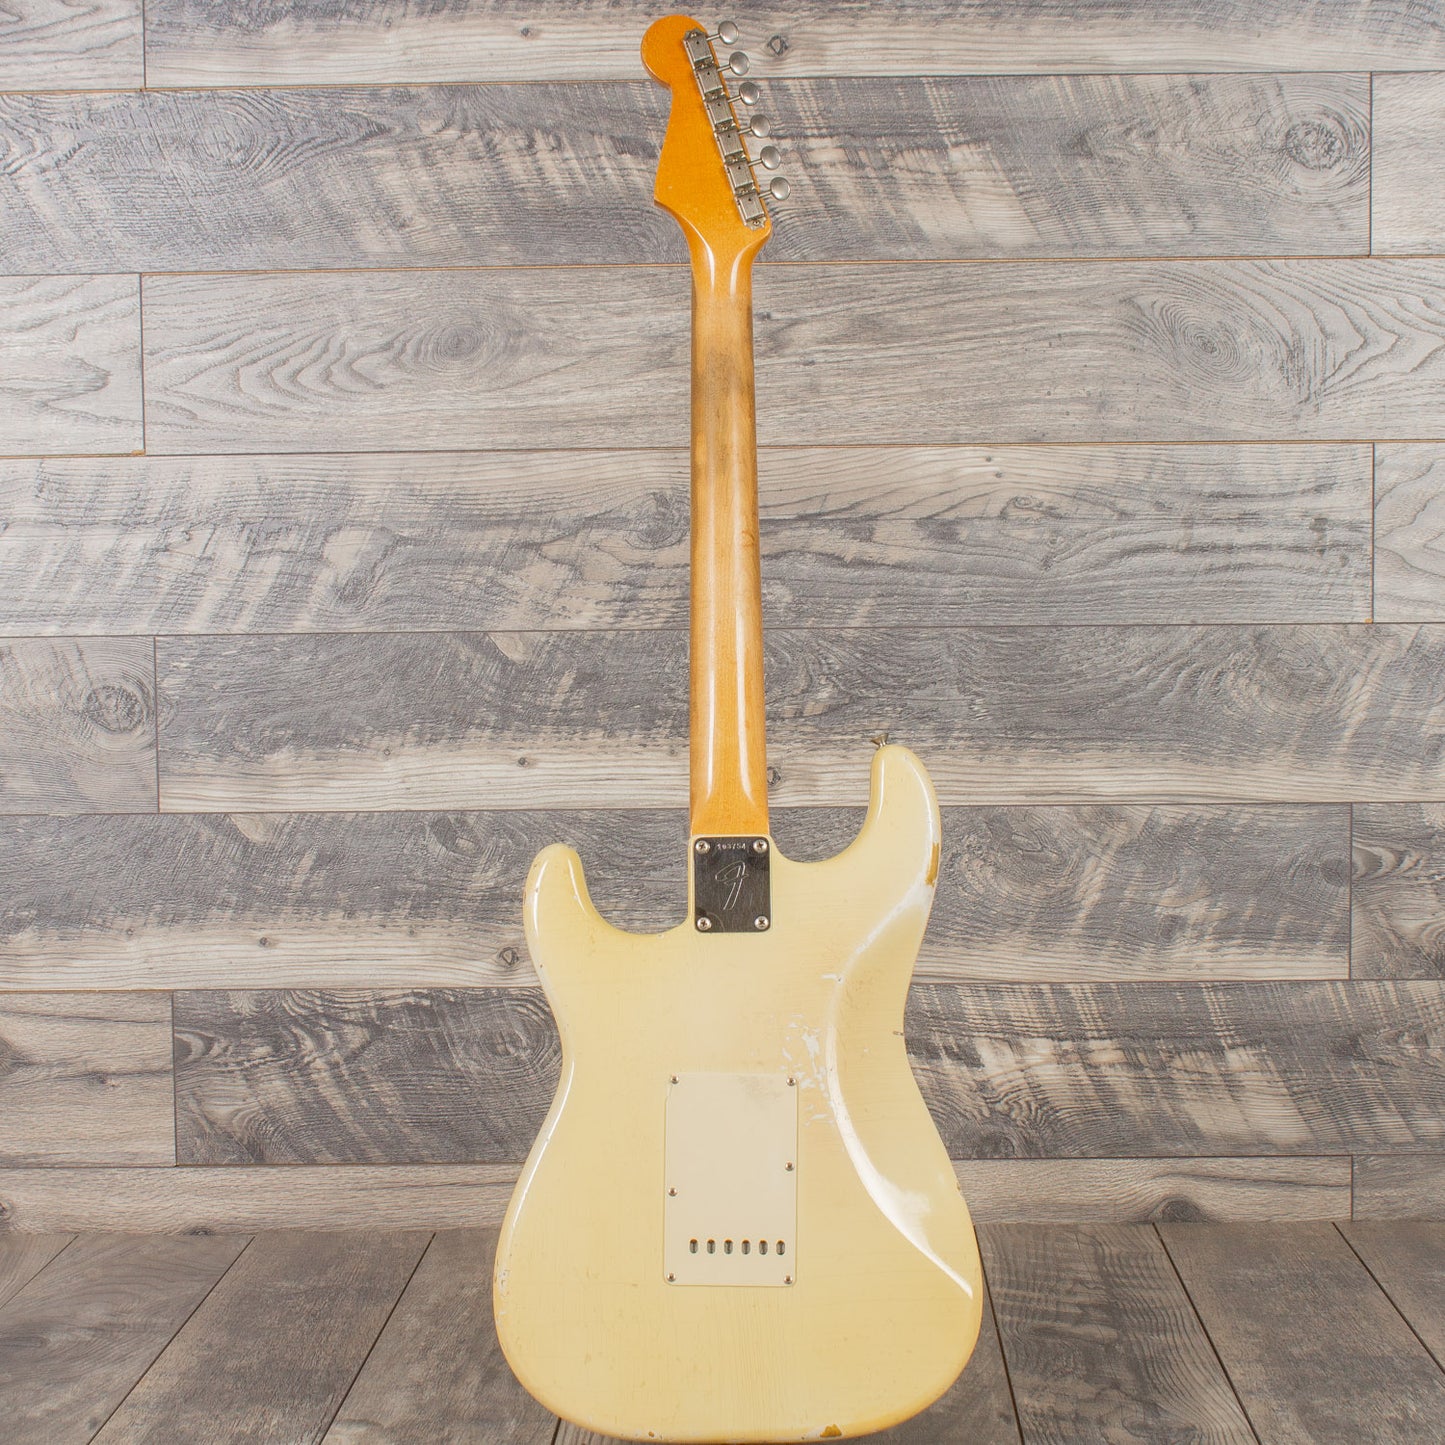 1965 Fender Stratocaster - Olympic White